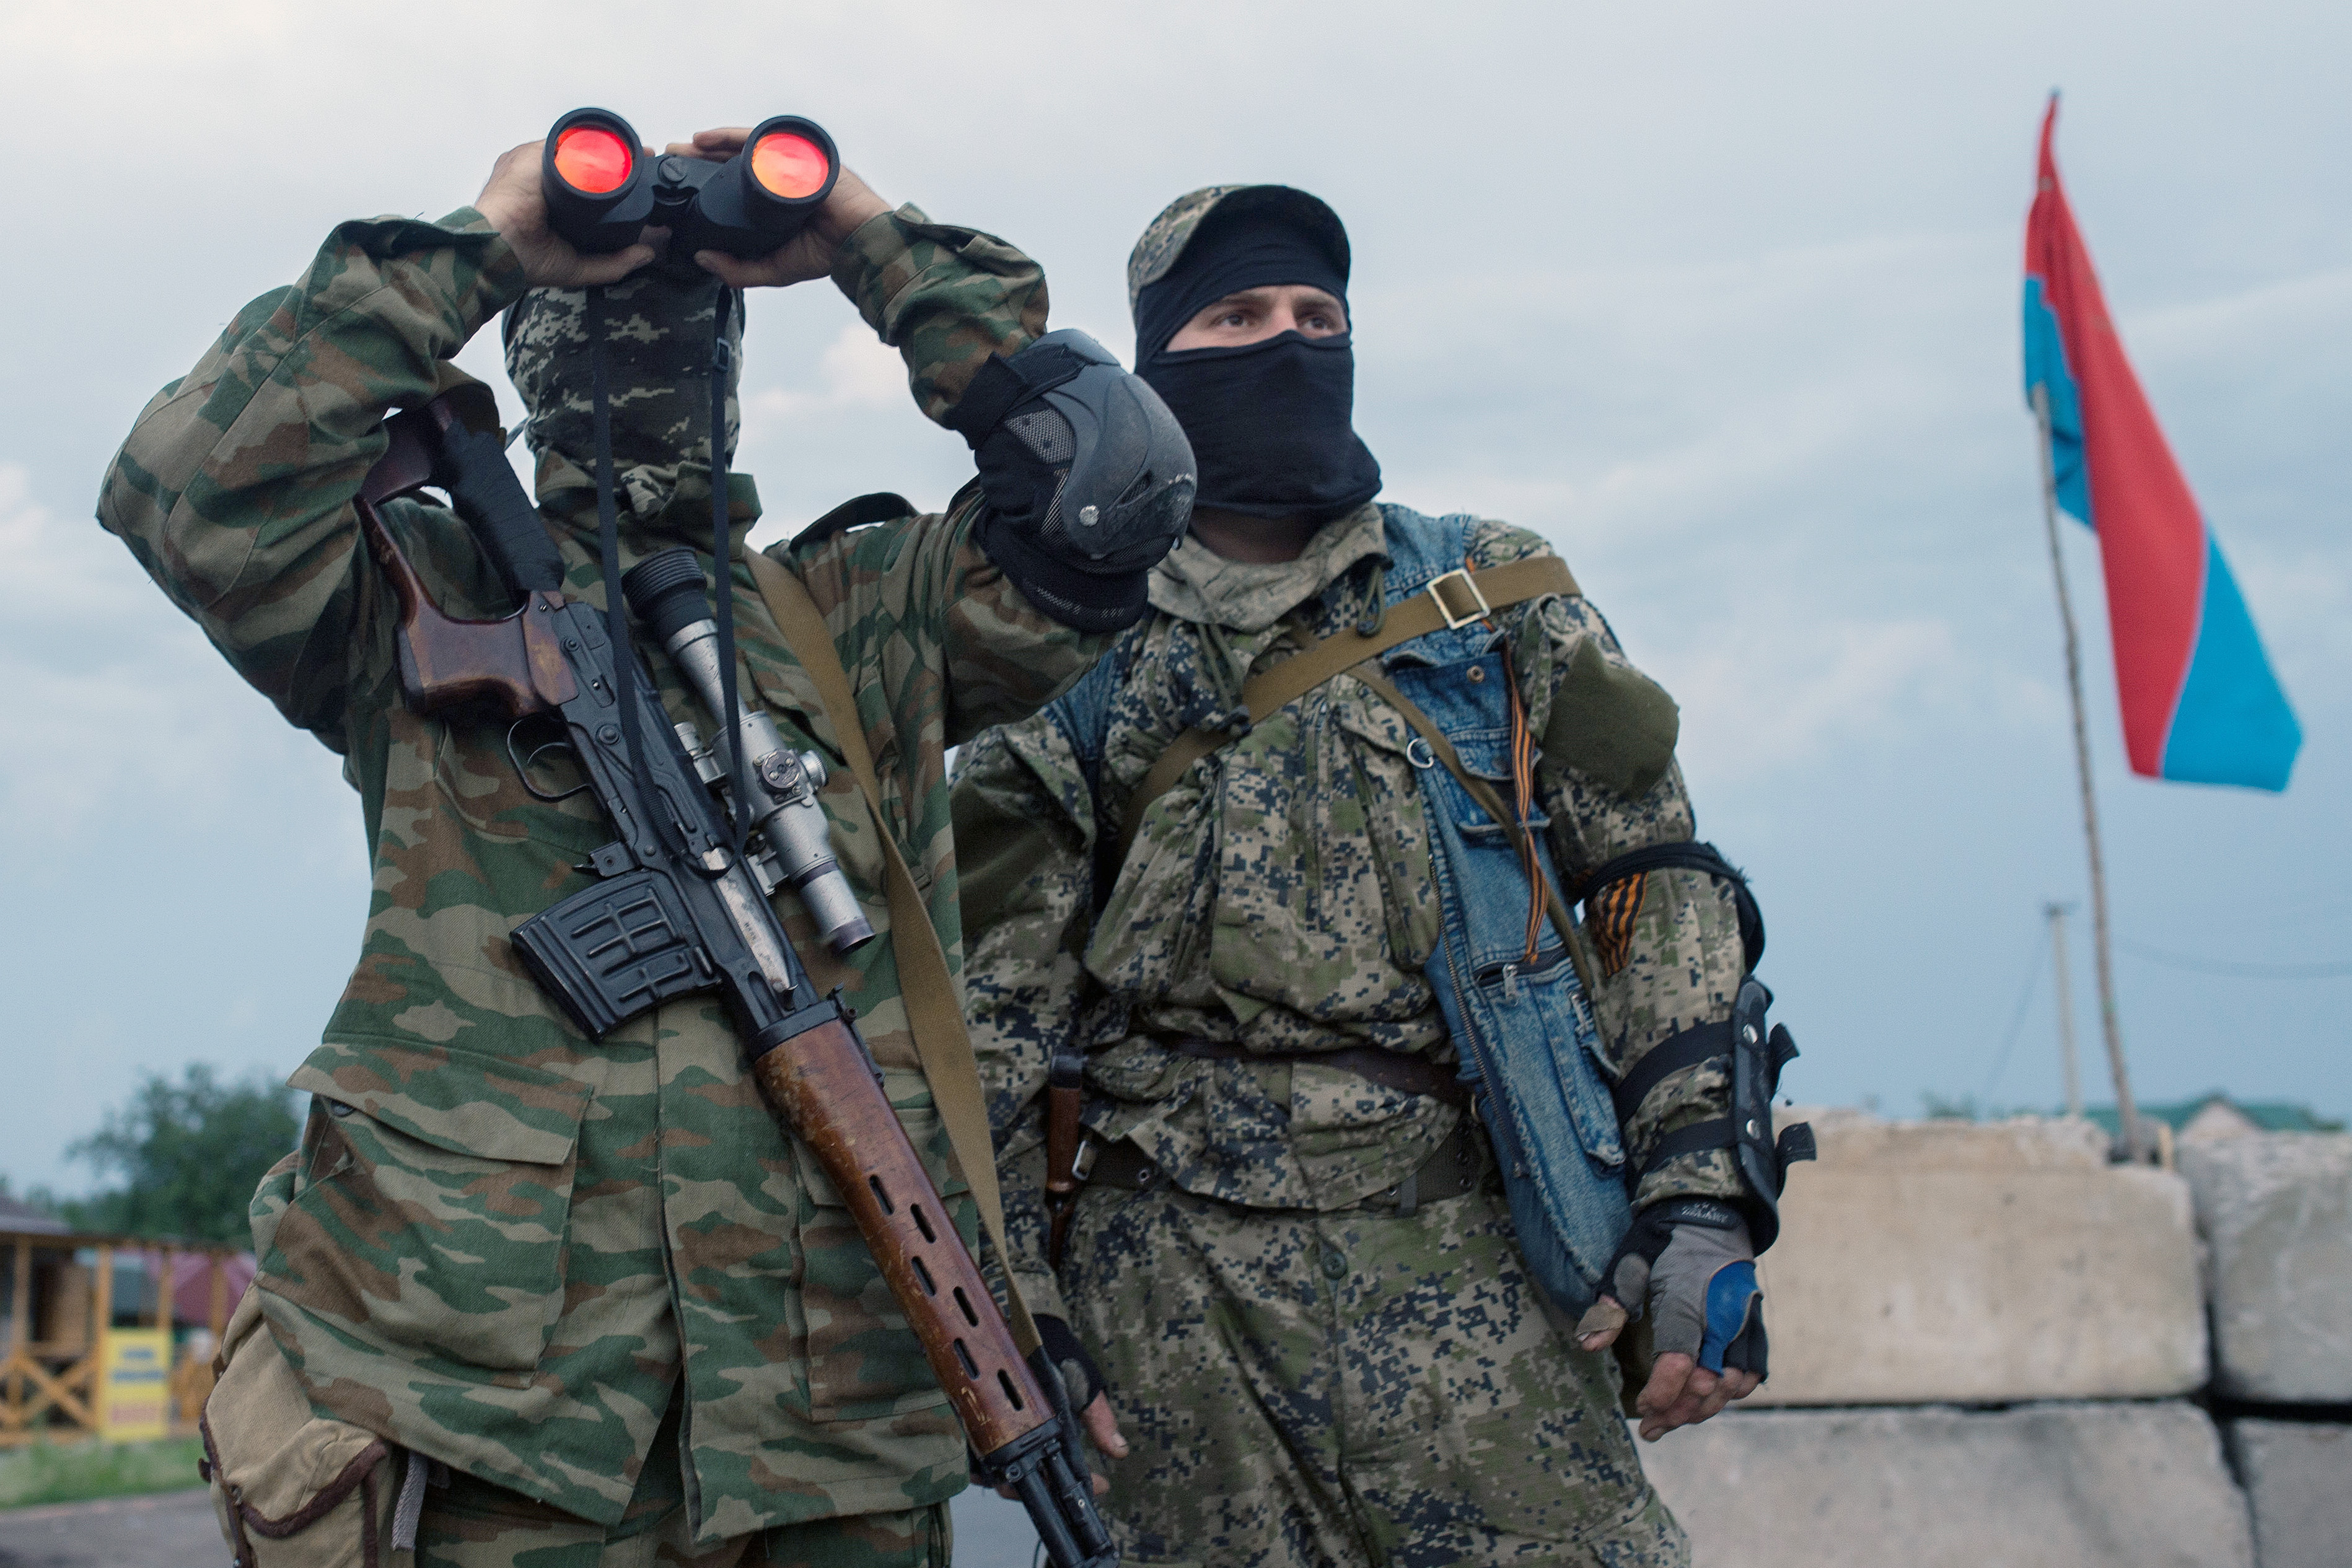 Сводка военных событий в Донецкой  и Луганской народных республиках  от 18 февраля